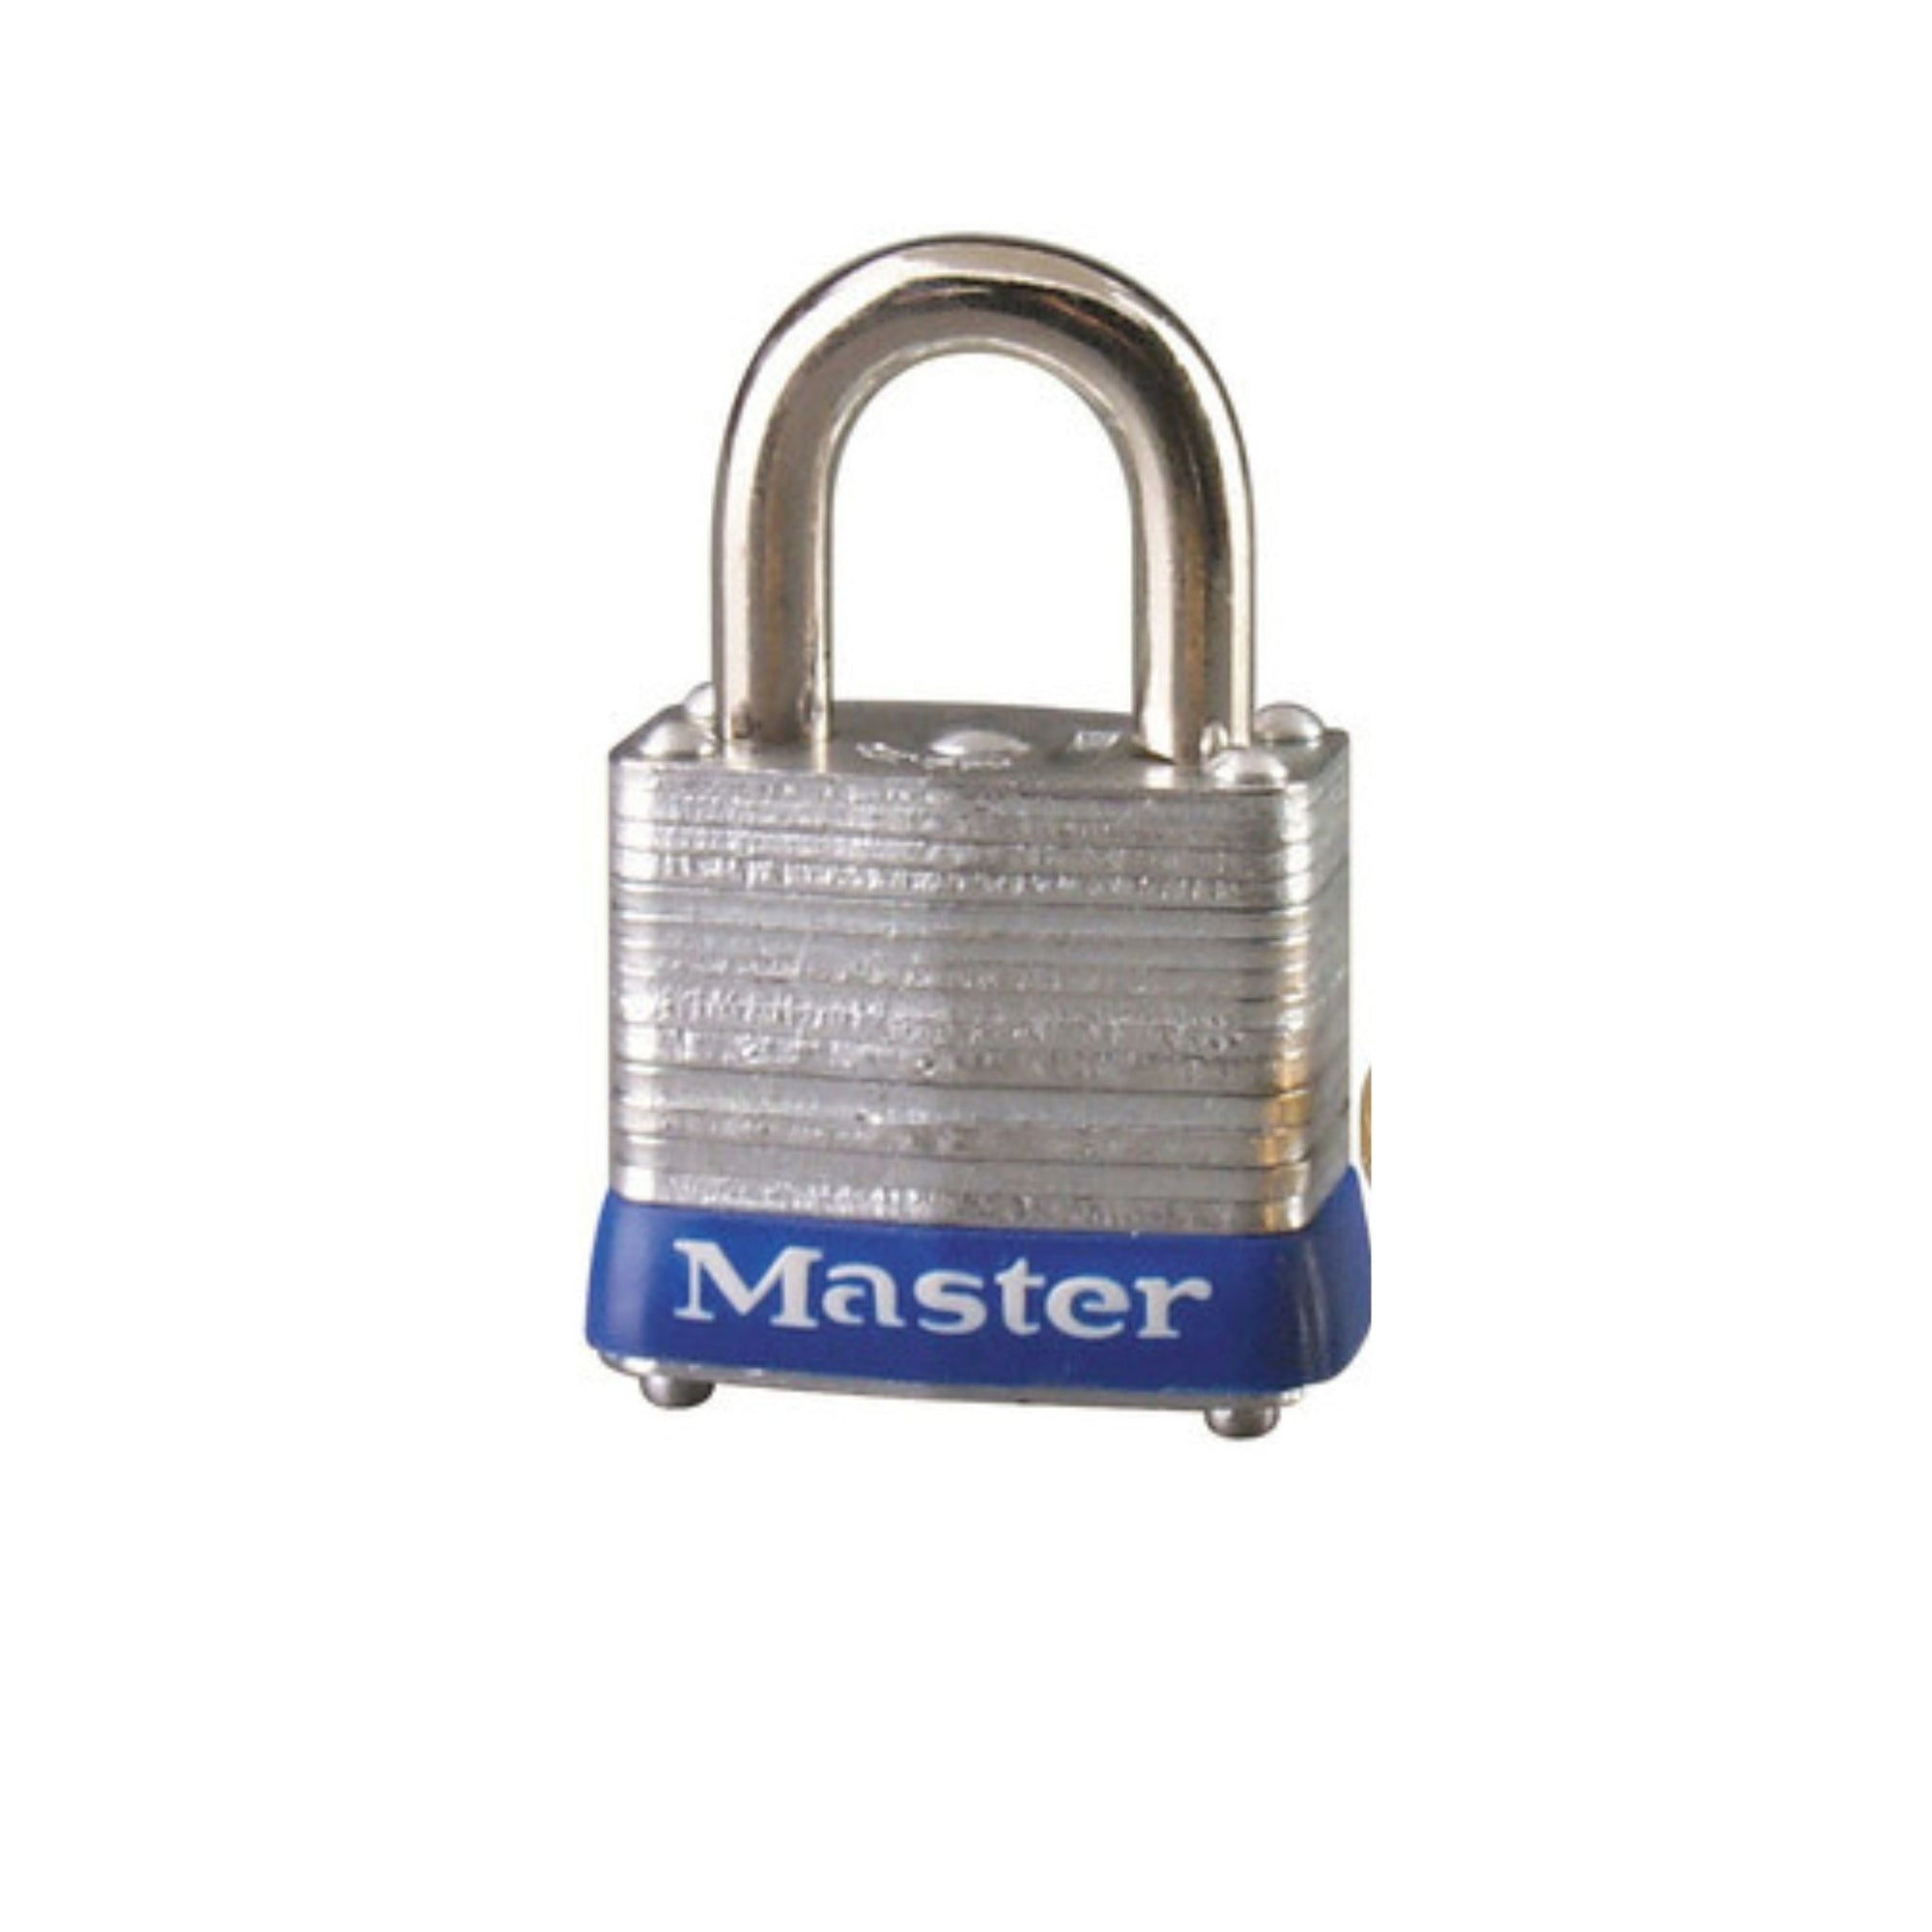 Master Lock 7KA P111 Lock Laminated steel No. 7 Series Padlock Keyed to Match Existing Key Number KAP111 - The Lock Source